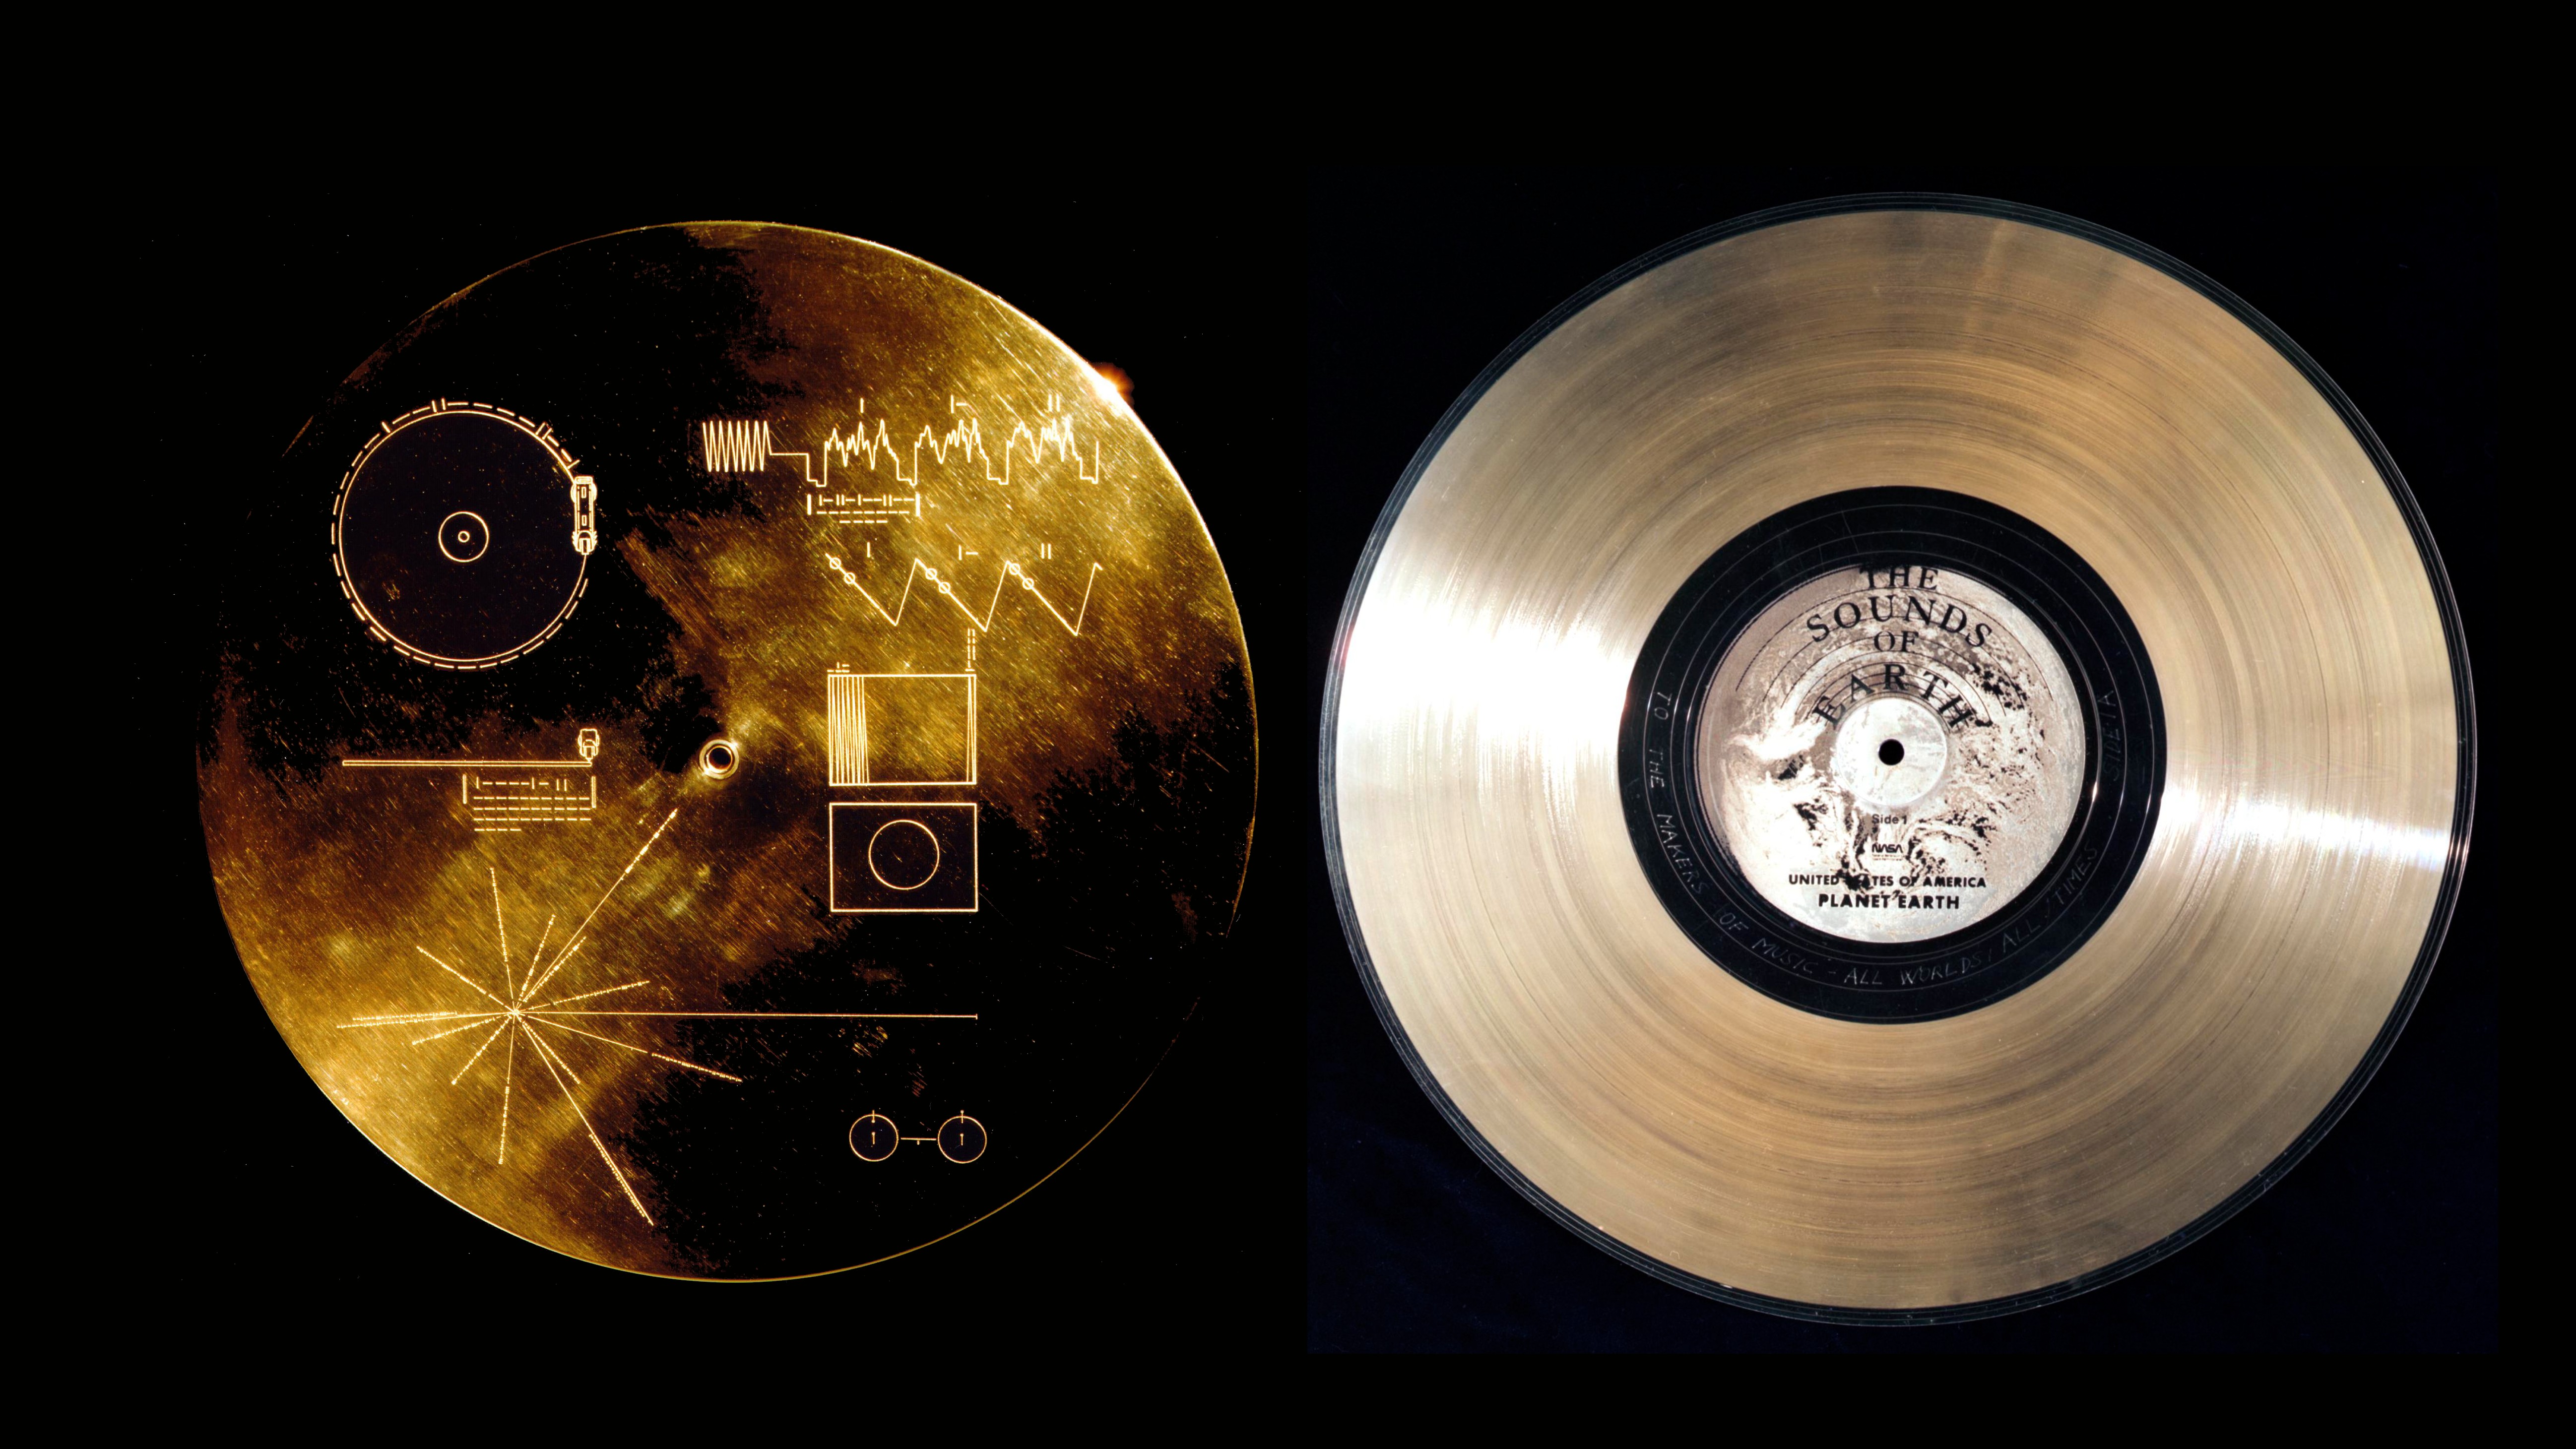 La portada y la etiqueta del Voyager Golden Record muestran un mapa pictórico de la Tierra.